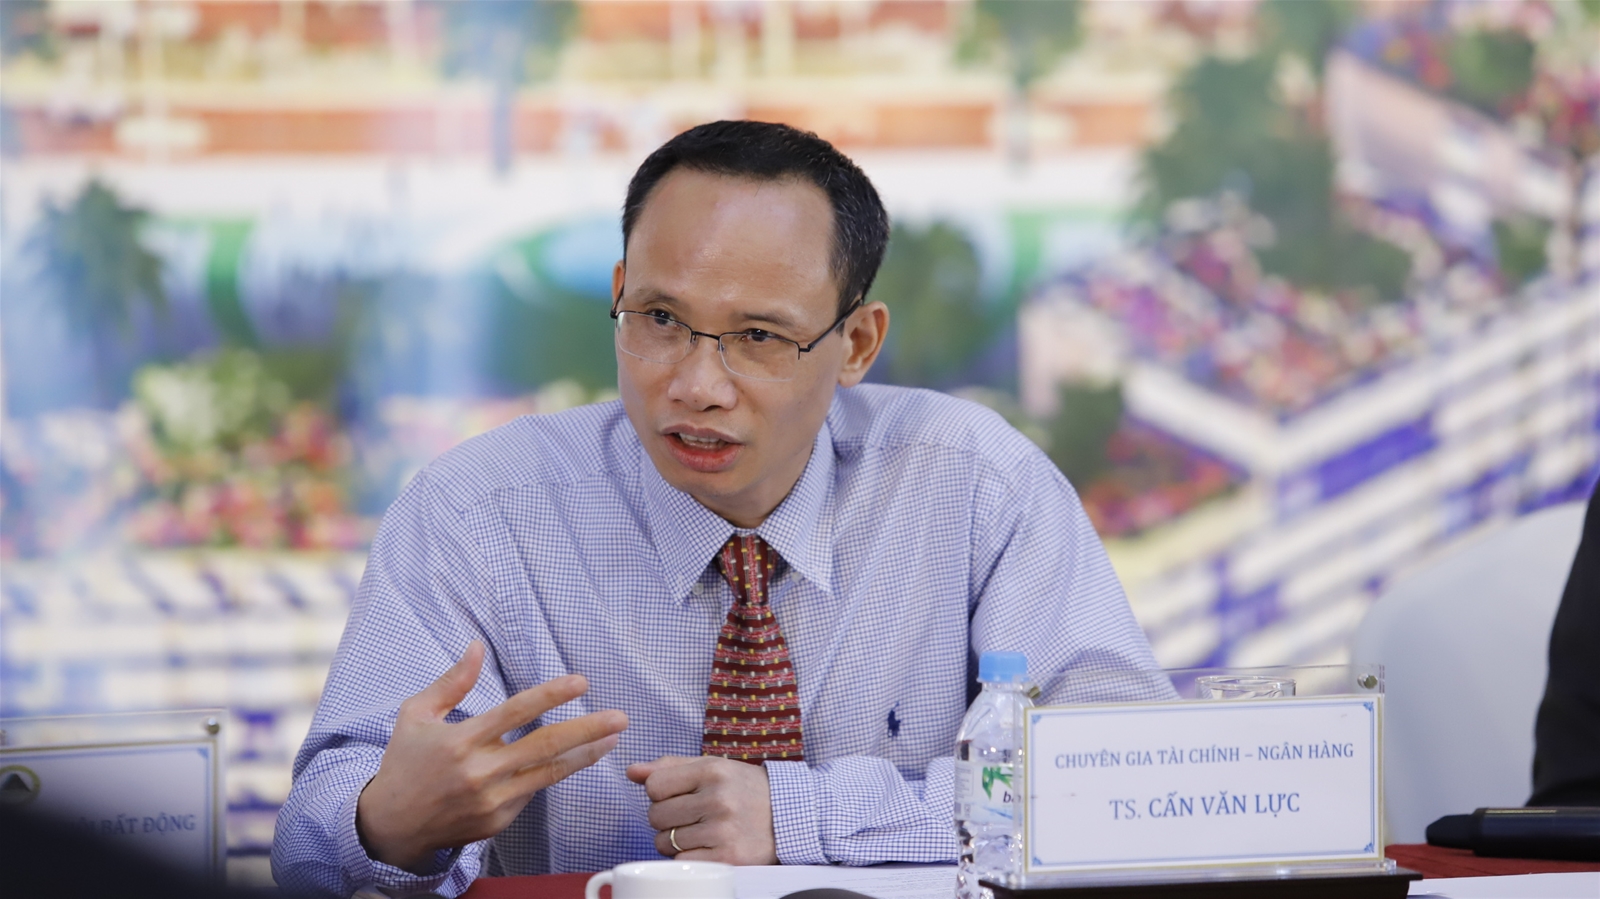 TS. Cấn Văn Lực, chuyên gia Kinh tế trưởng BIDV, Thành viên Hội đồng Tư vấn Chính sách Tài chính-tiền tệ Quốc gia.